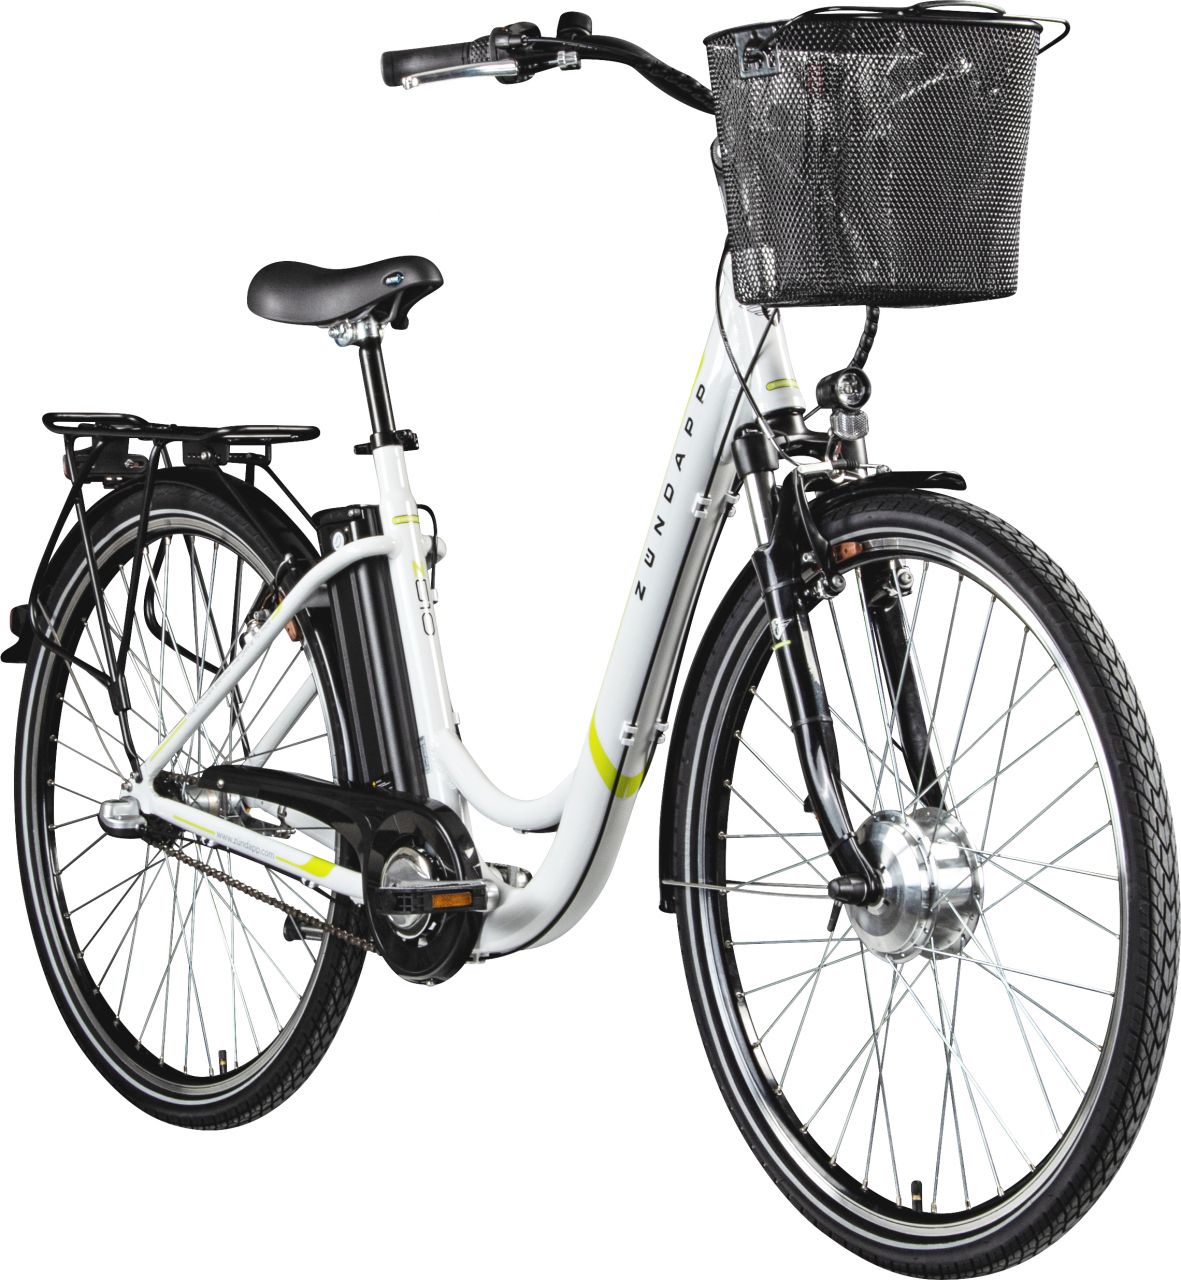 Zündapp E-Bike City Z510 700c Damen 28 Zoll RH 48cm 3-Gang 374 Wh weiß grün